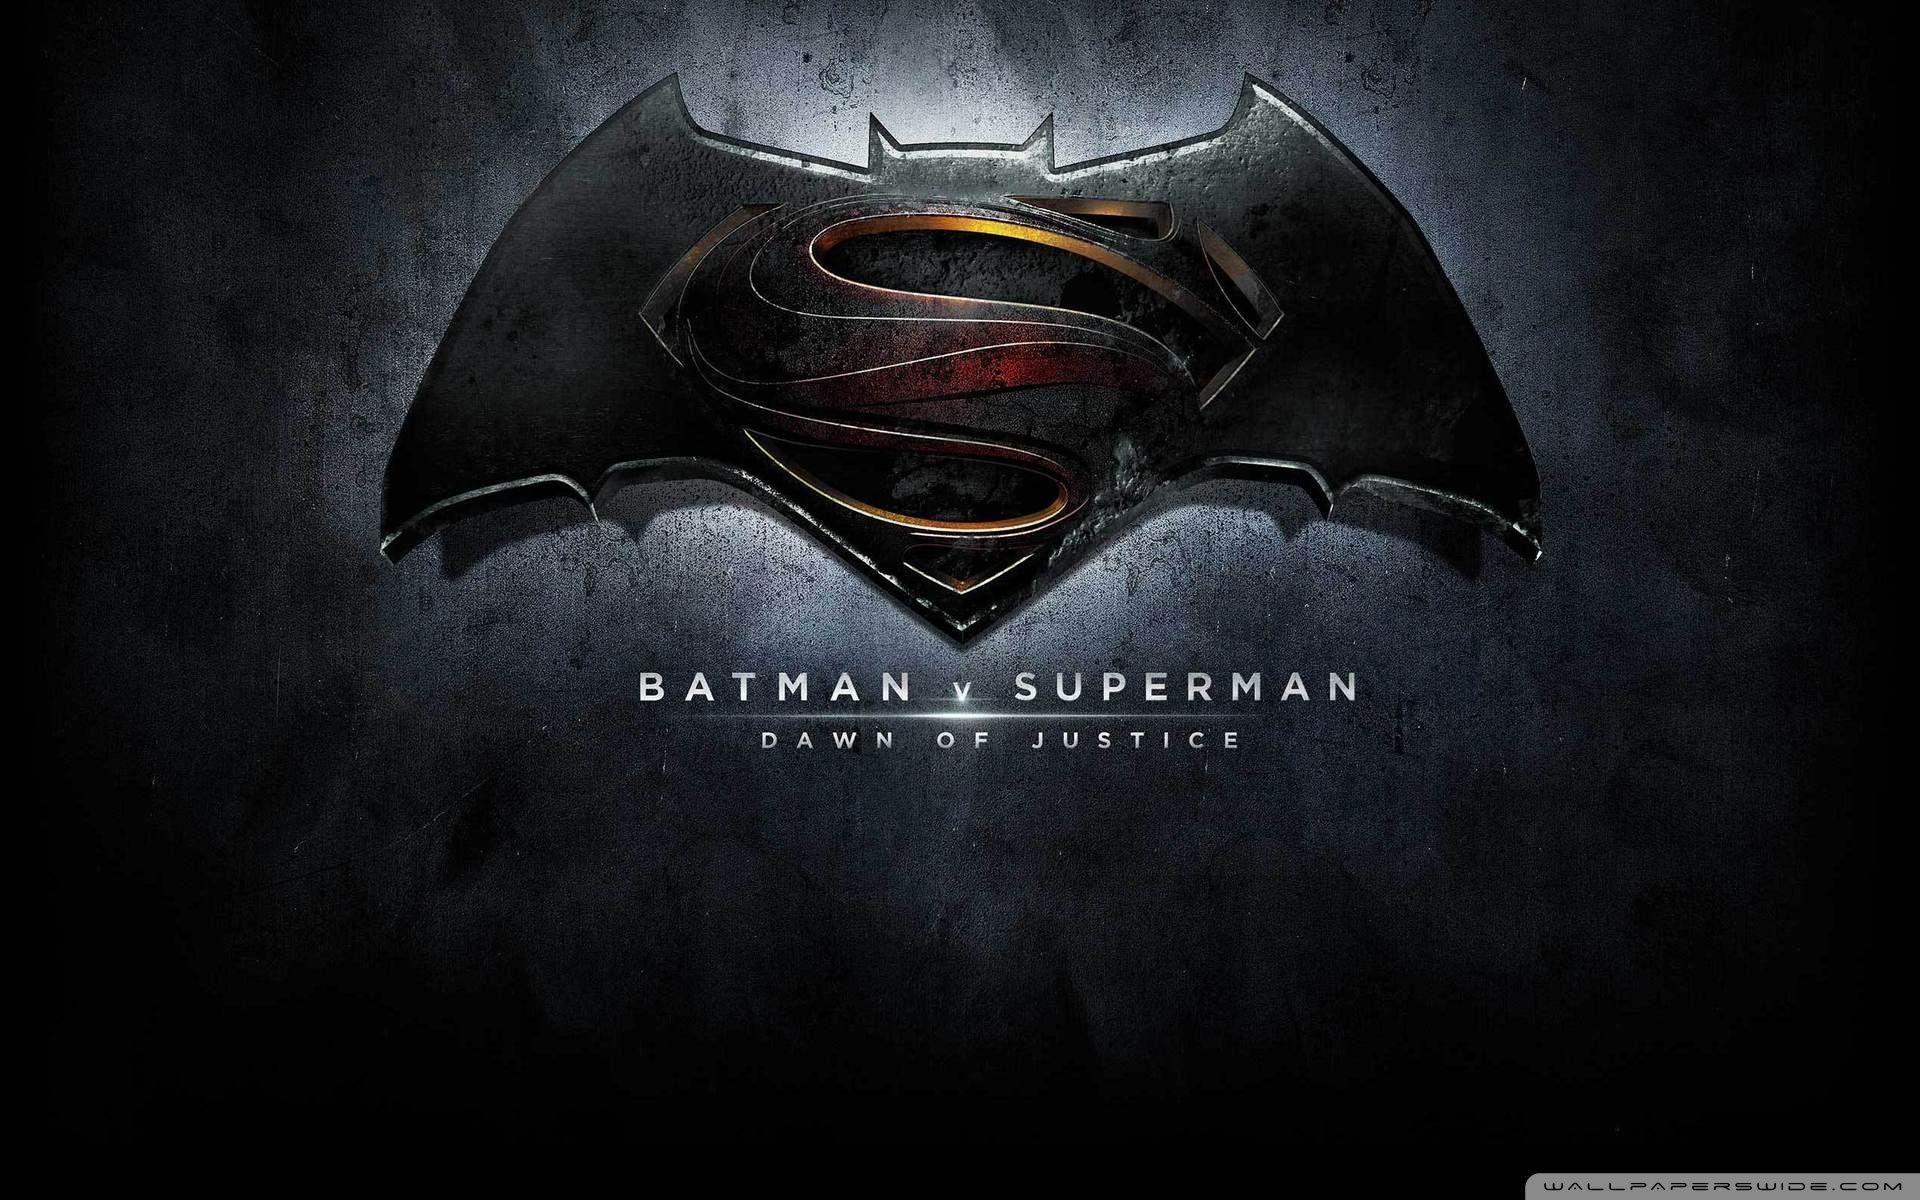 Superman Vs Batman Logo Wallpapers - Wallpaper Cave